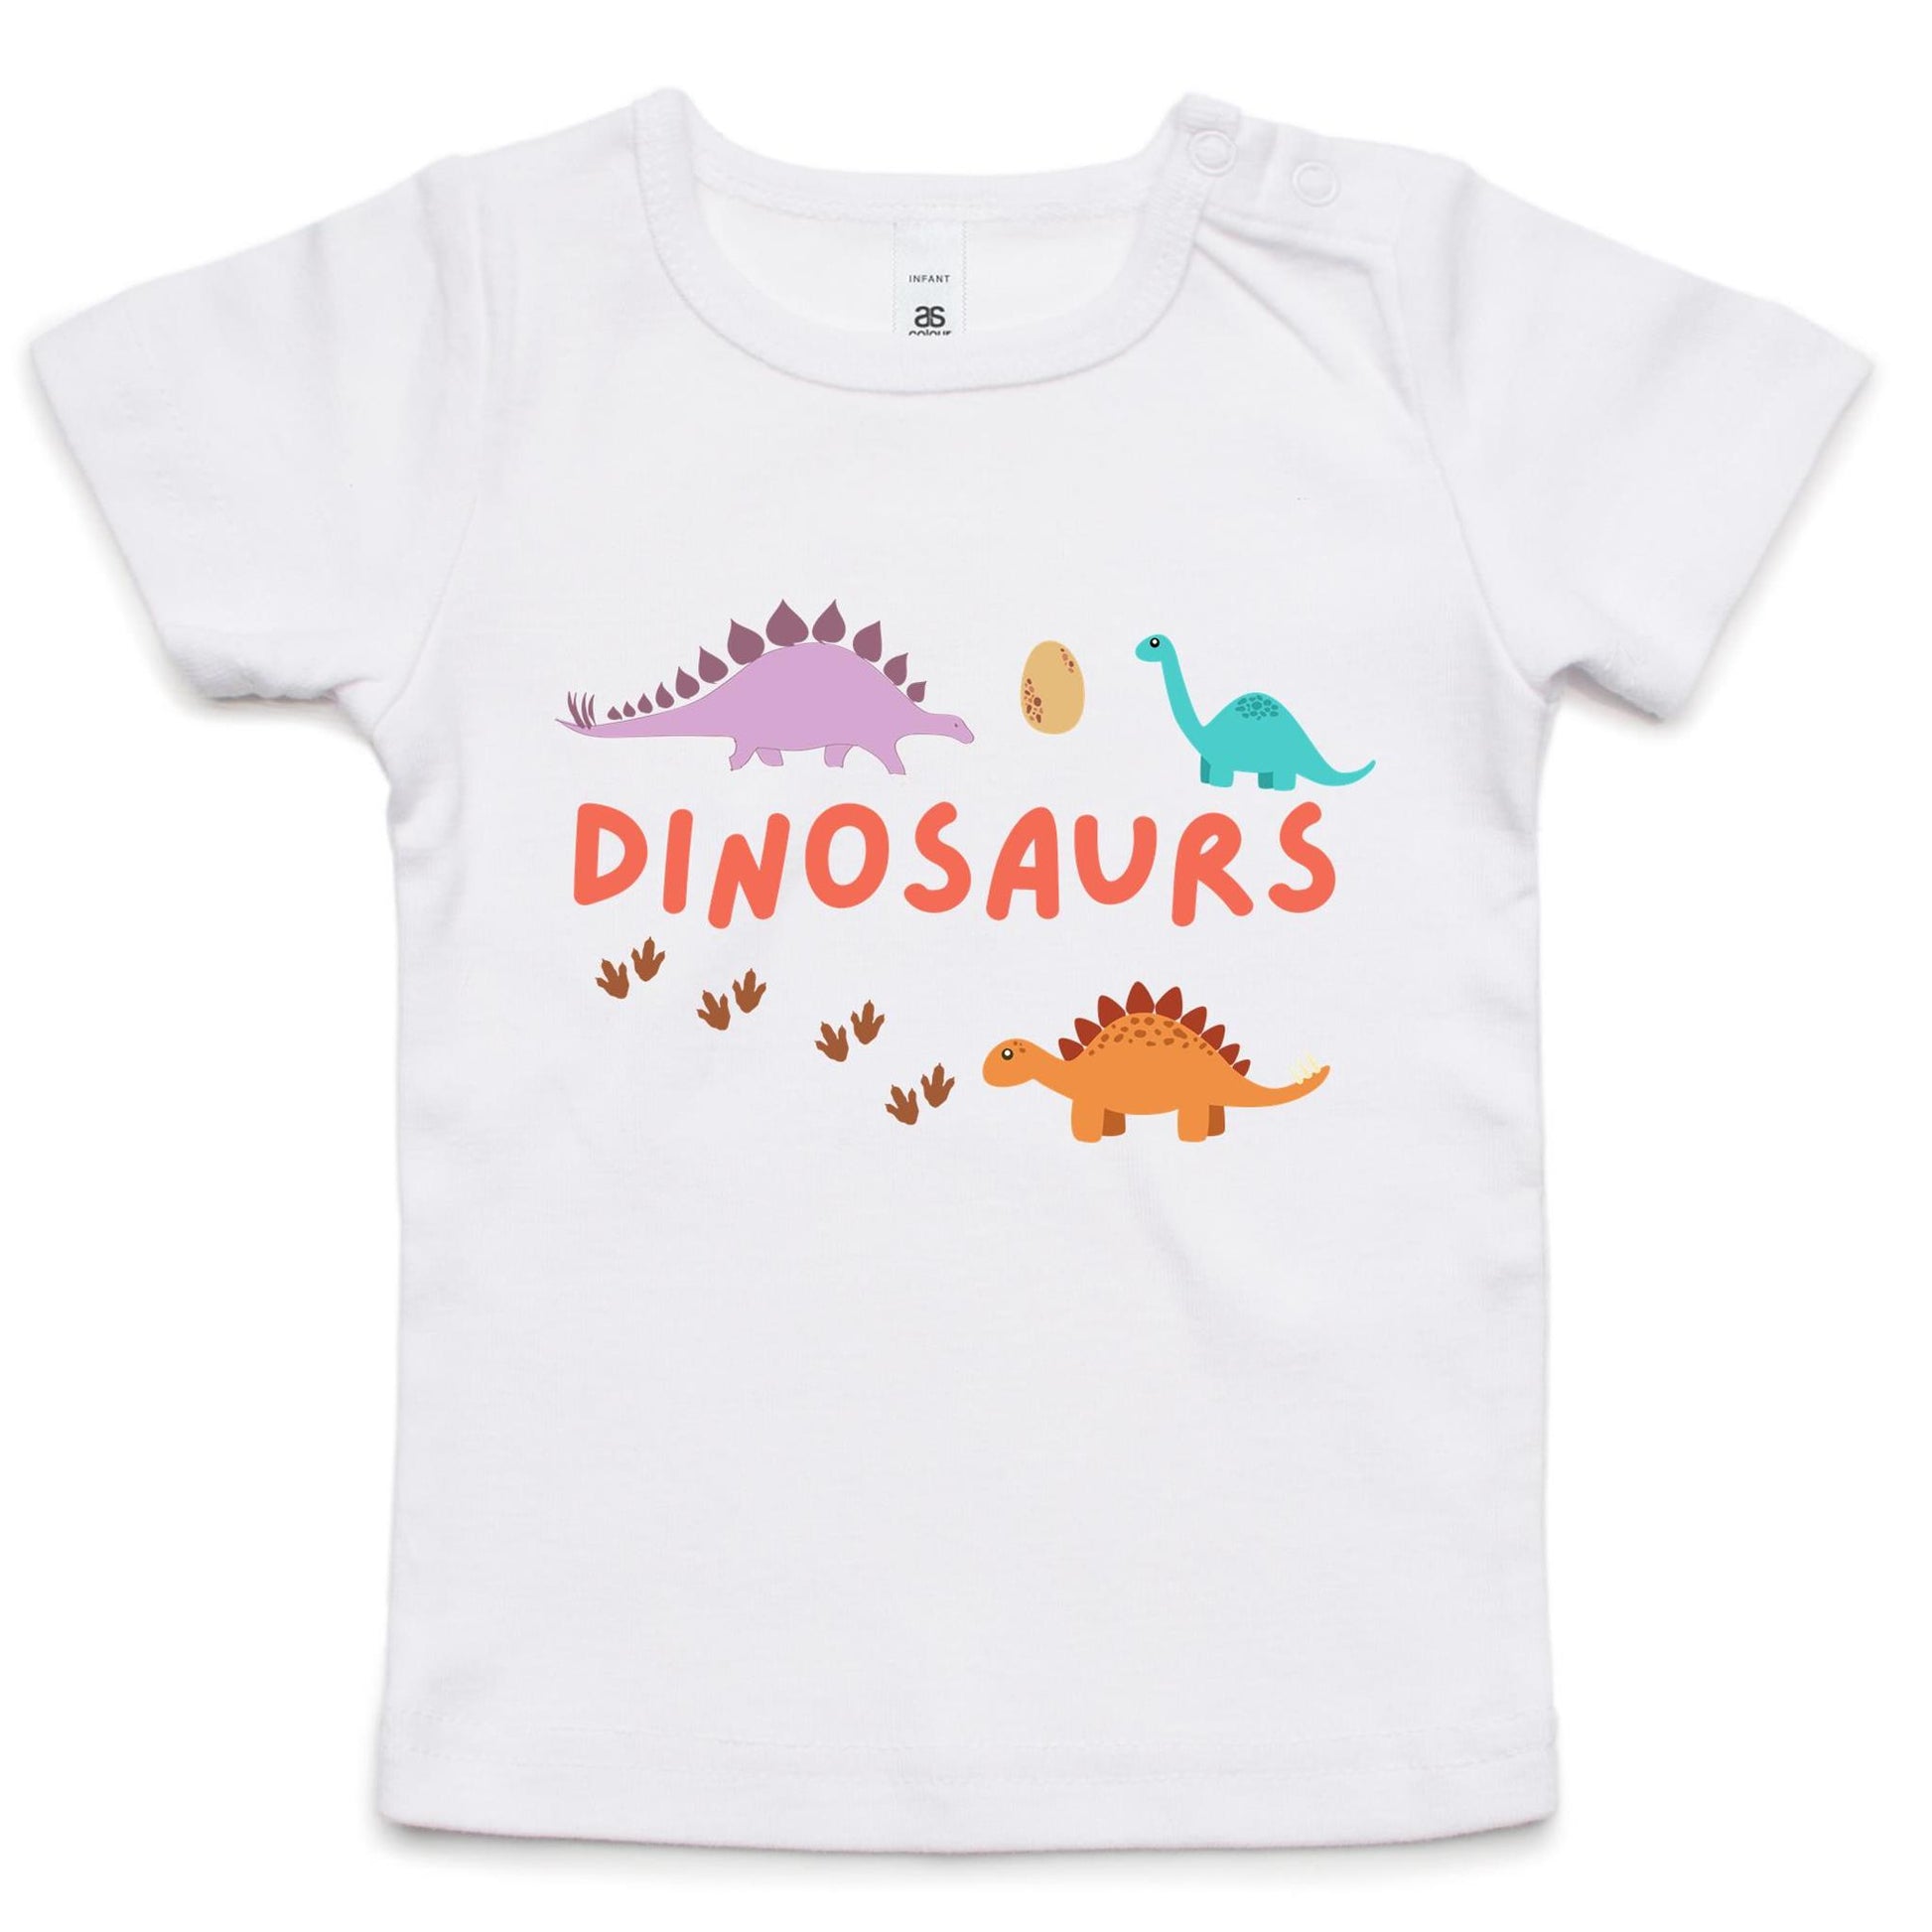 Dinosaurs - Baby T-shirt White Baby T-shirt animal